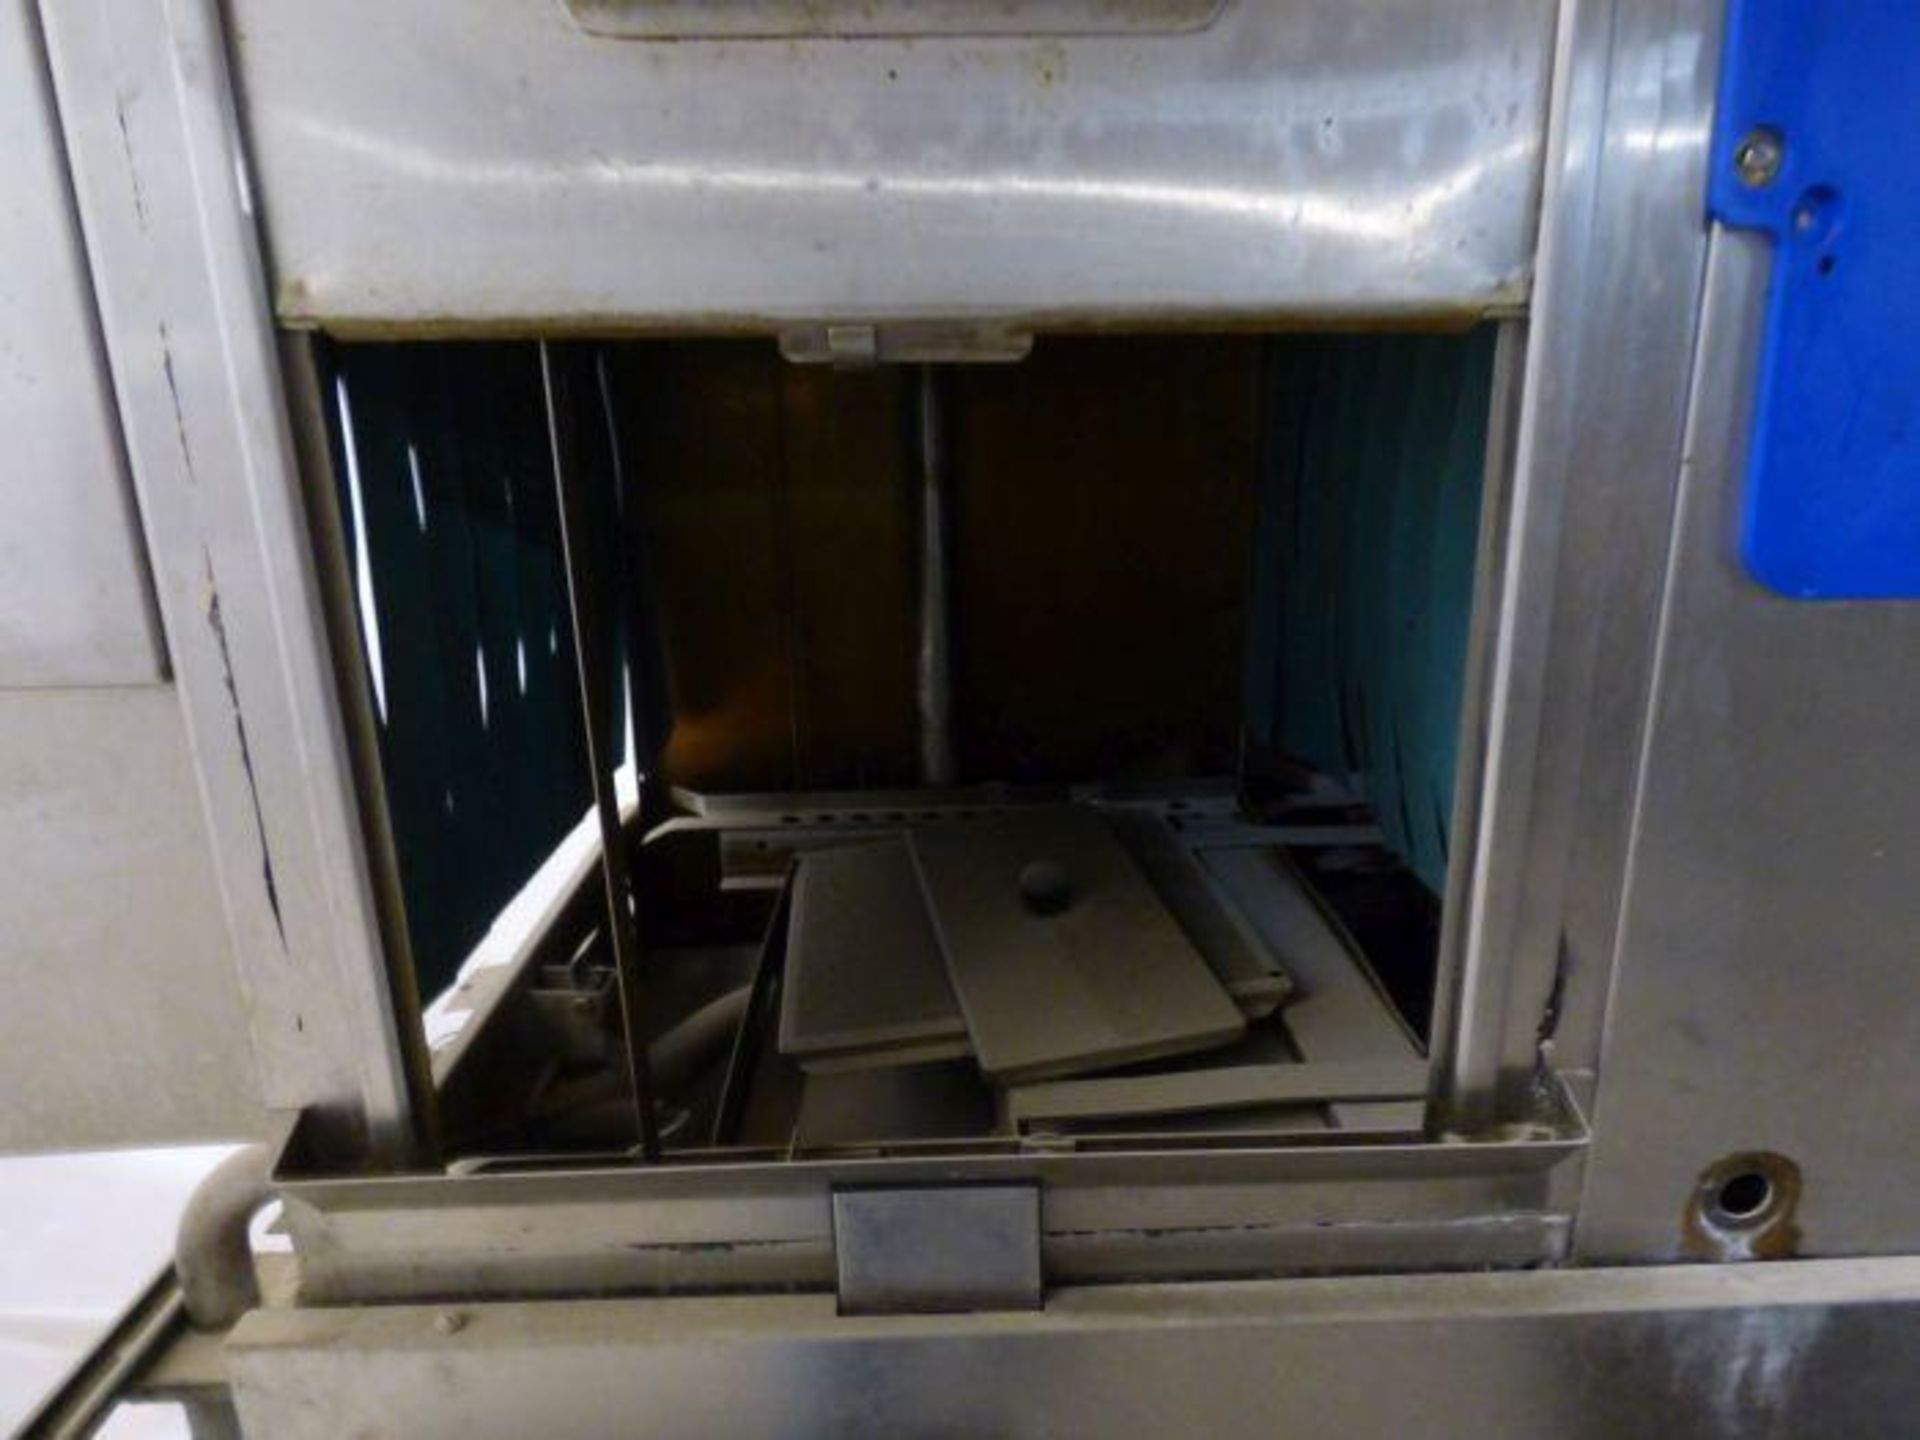 Hobart Conveyor Dishwasher - Image 3 of 7